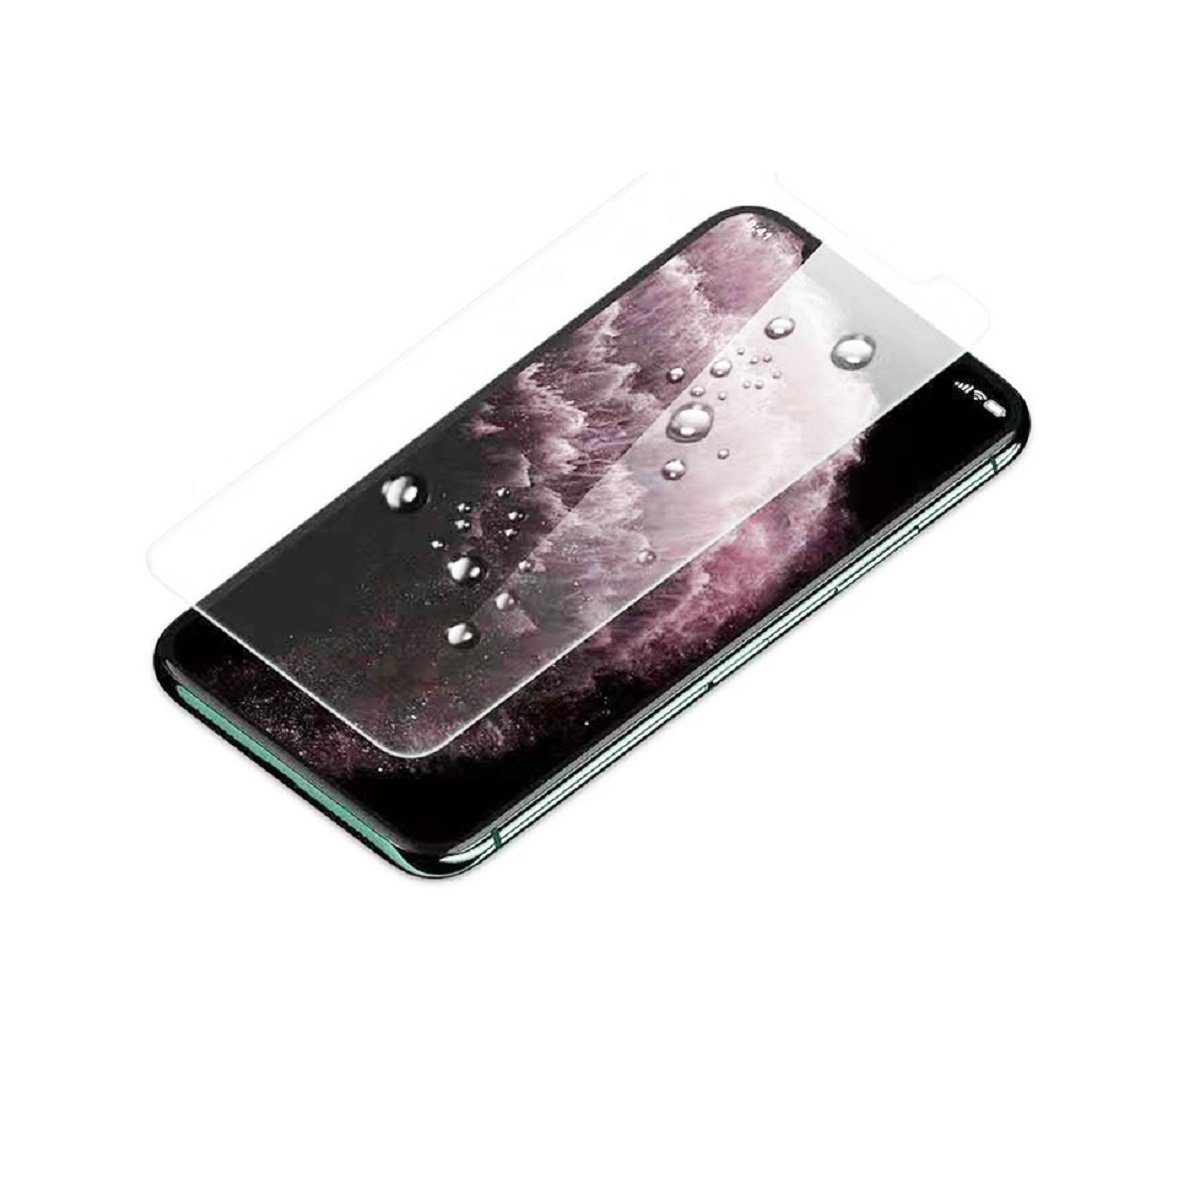 13 Pro, (2-St), Sichtschutzfolie Apple iPhone Panzerfolie passt Fullcover Ventarent 9H für